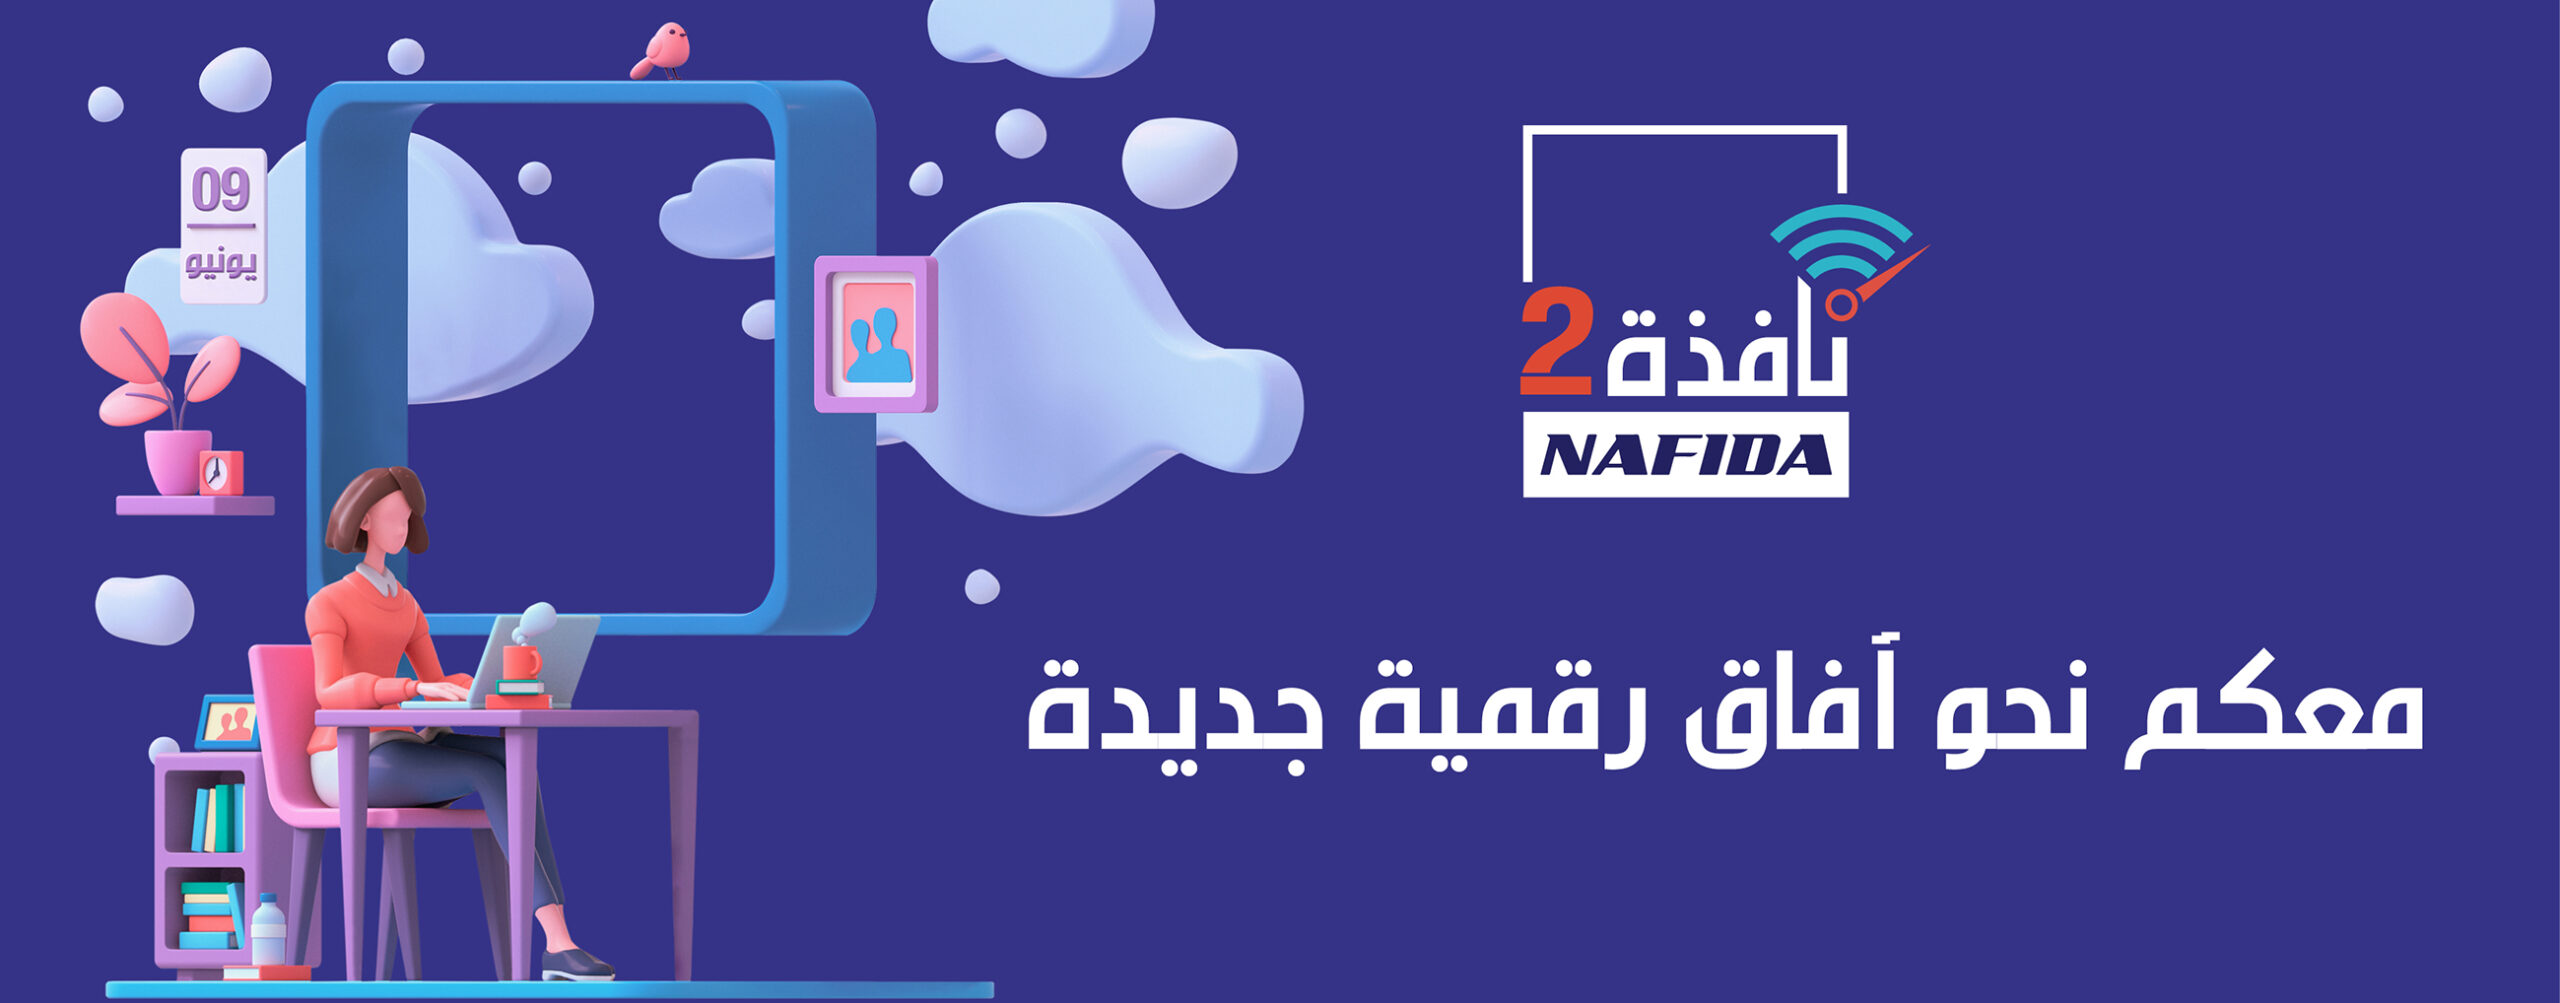 Nafida 2 : Nouvelles conventions de partenariat